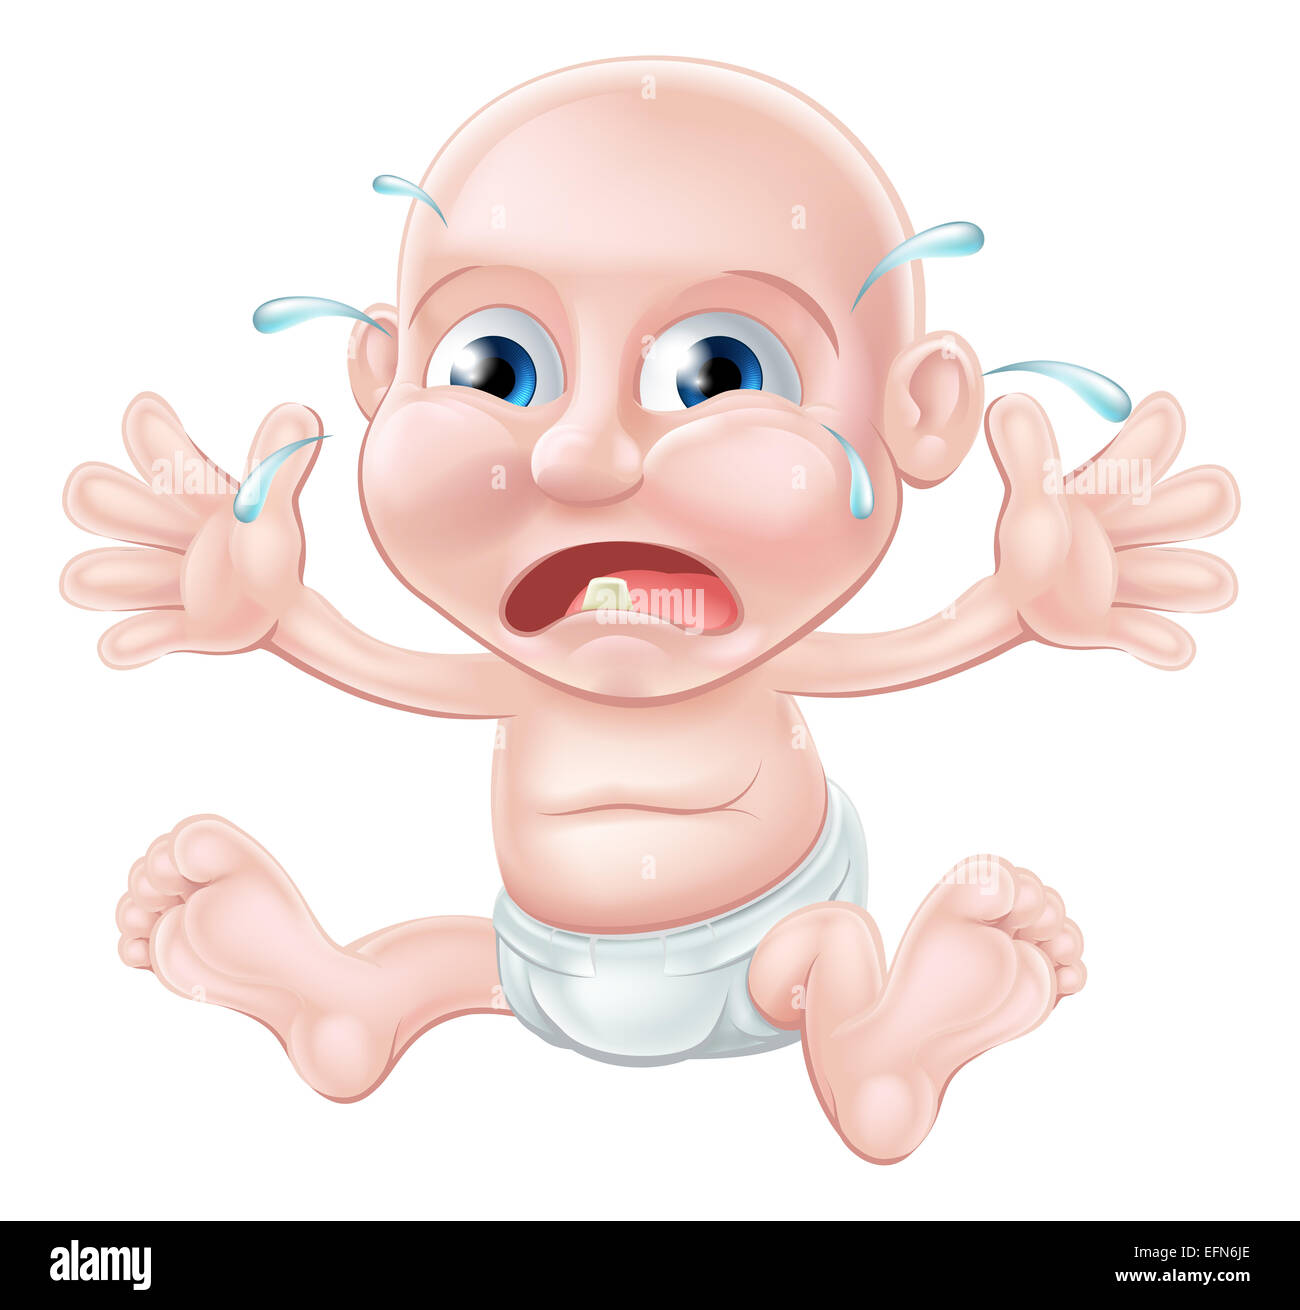 Une malheureuse pleurer bébé cartoon, dentition probablement car il a une dent à travers Banque D'Images